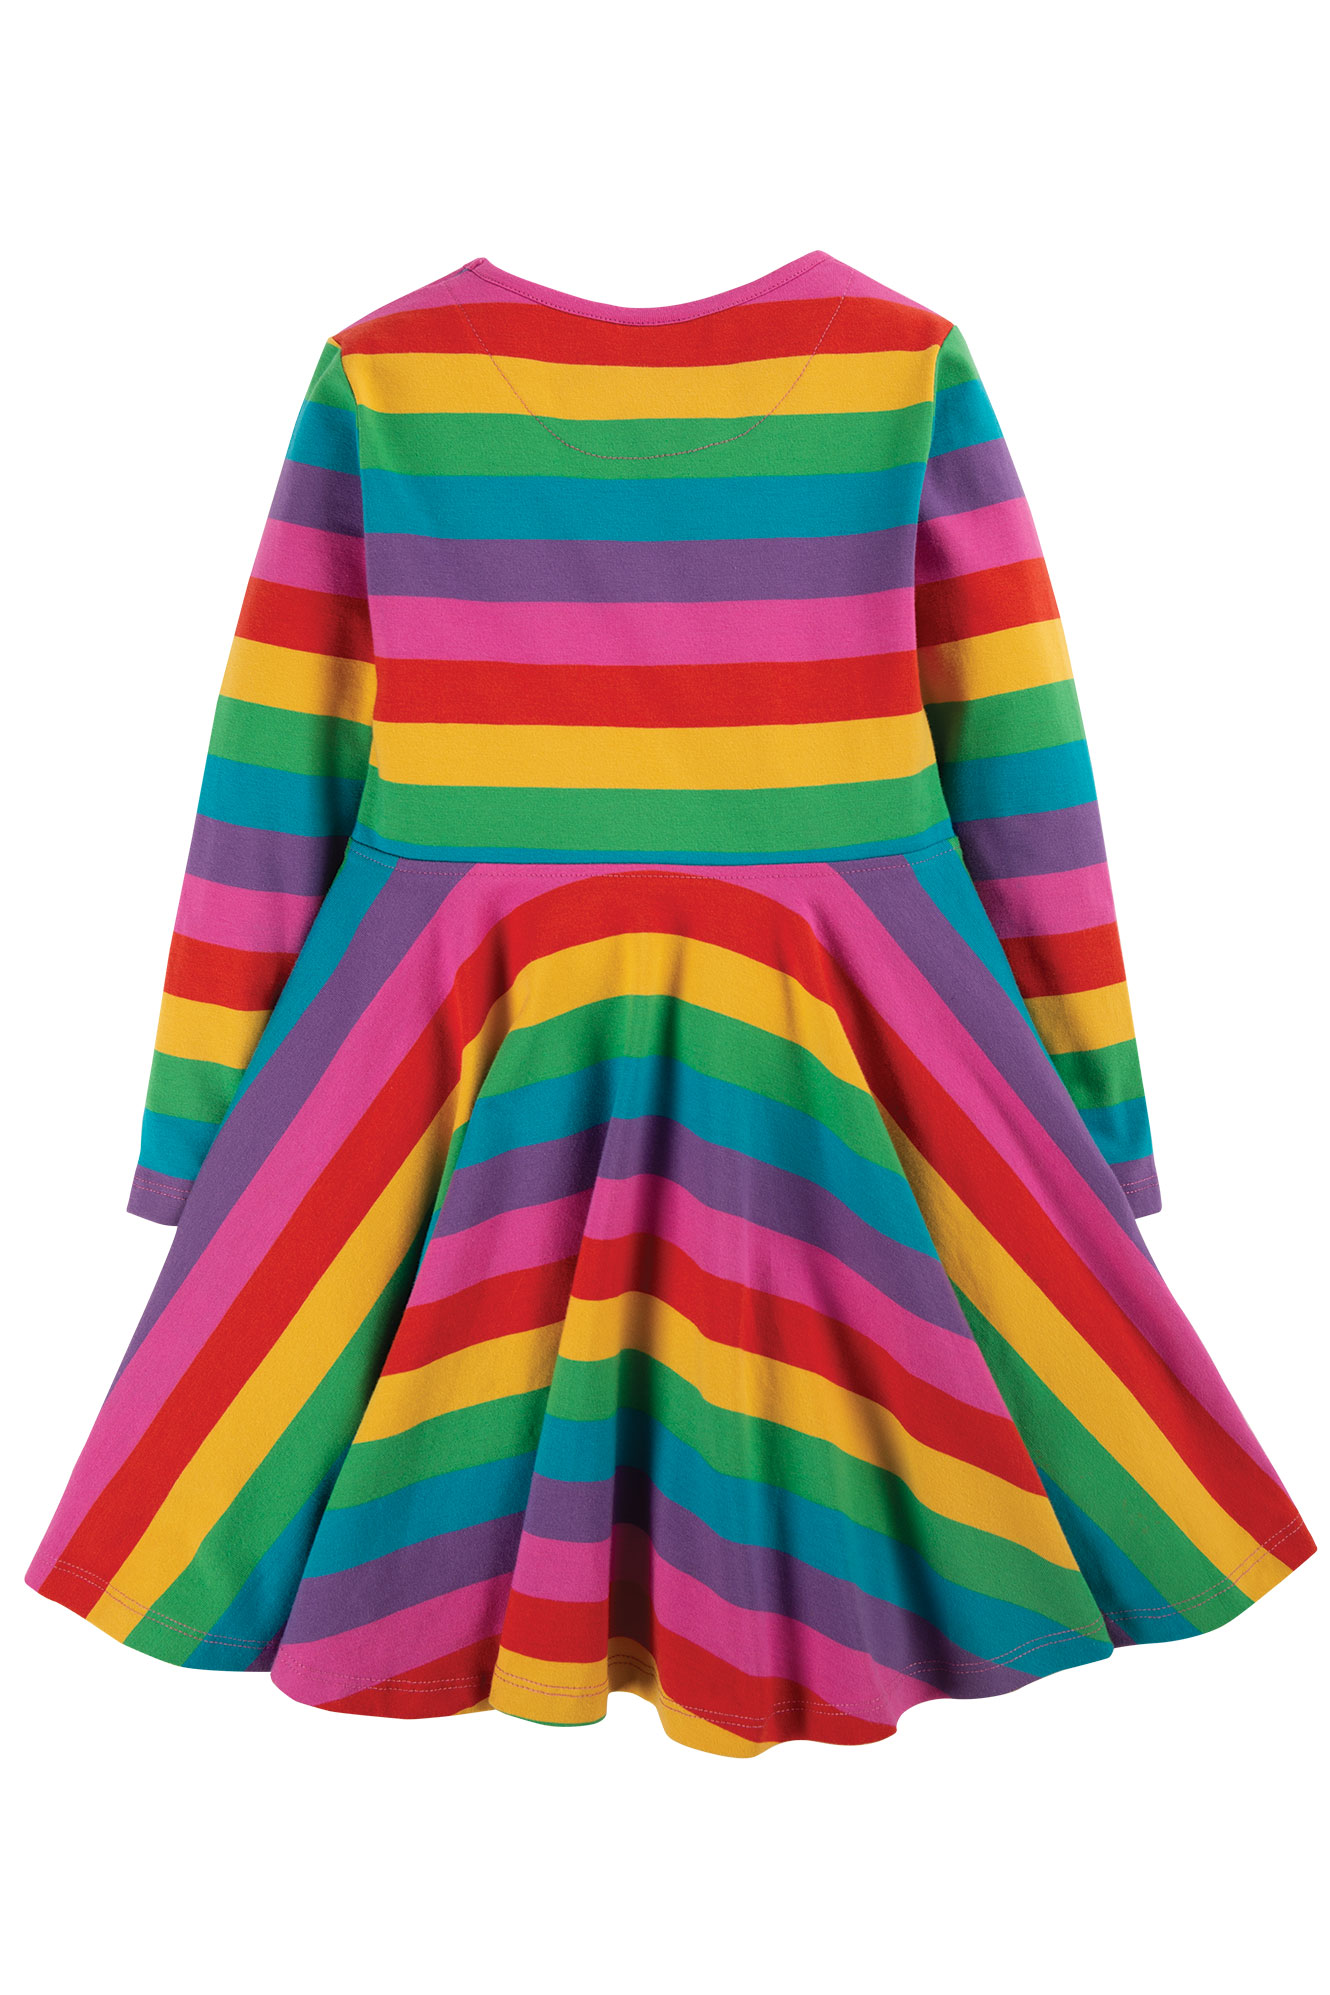 Skater Kleid Regenbogen